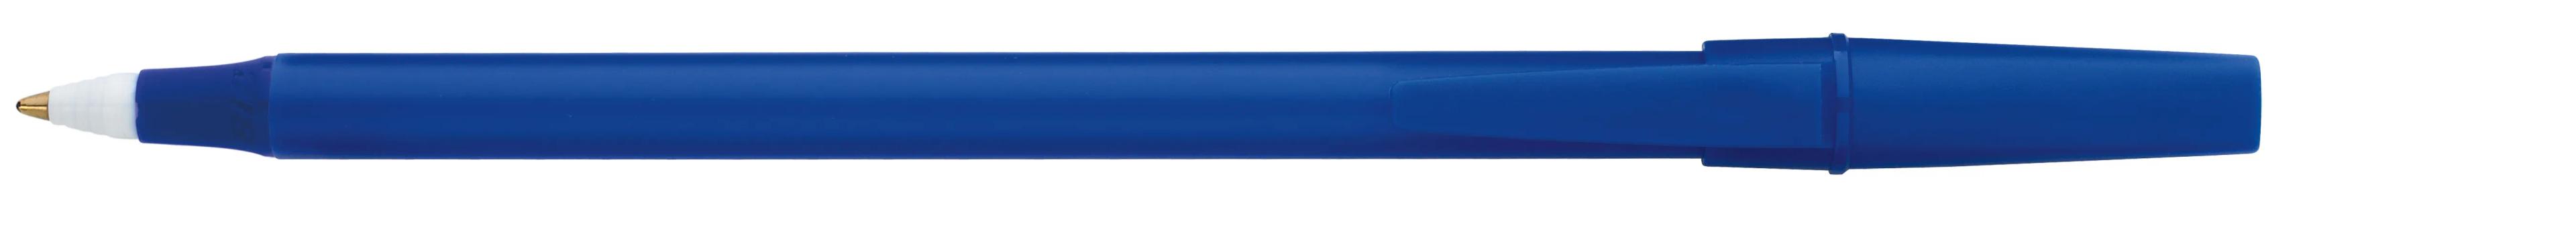 Corporate Promo Stick Pen 7 of 33